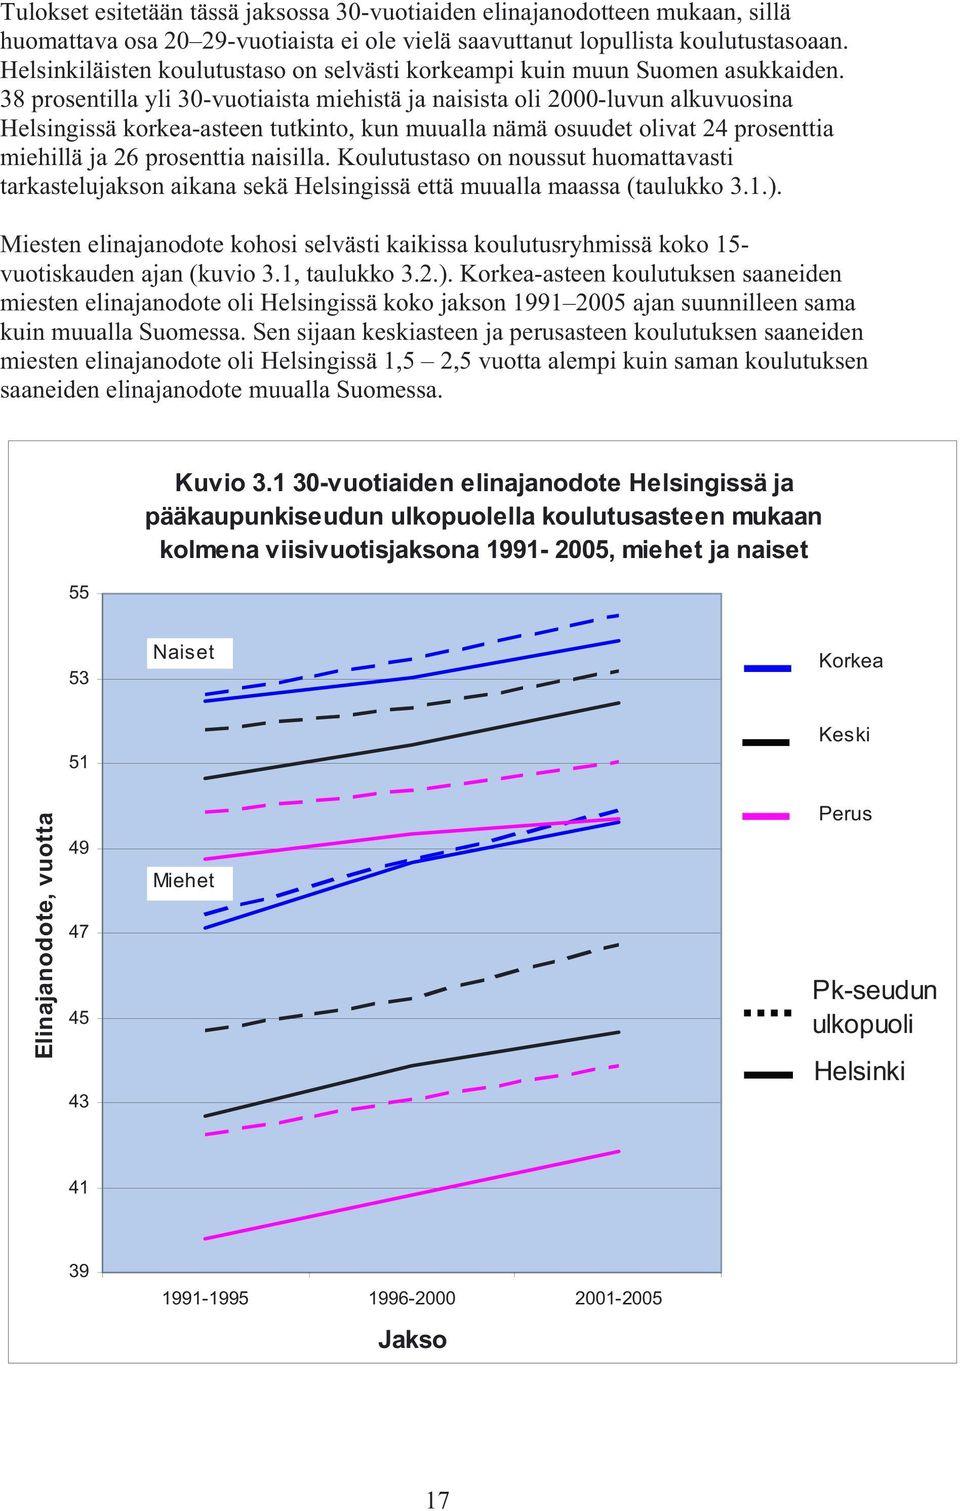 38 prosentilla yli 30-vuotiaista miehistä ja naisista oli 2000-luvun alkuvuosina Helsingissä korkea-asteen tutkinto, kun muualla nämä osuudet olivat 24 prosenttia miehillä ja 26 prosenttia naisilla.